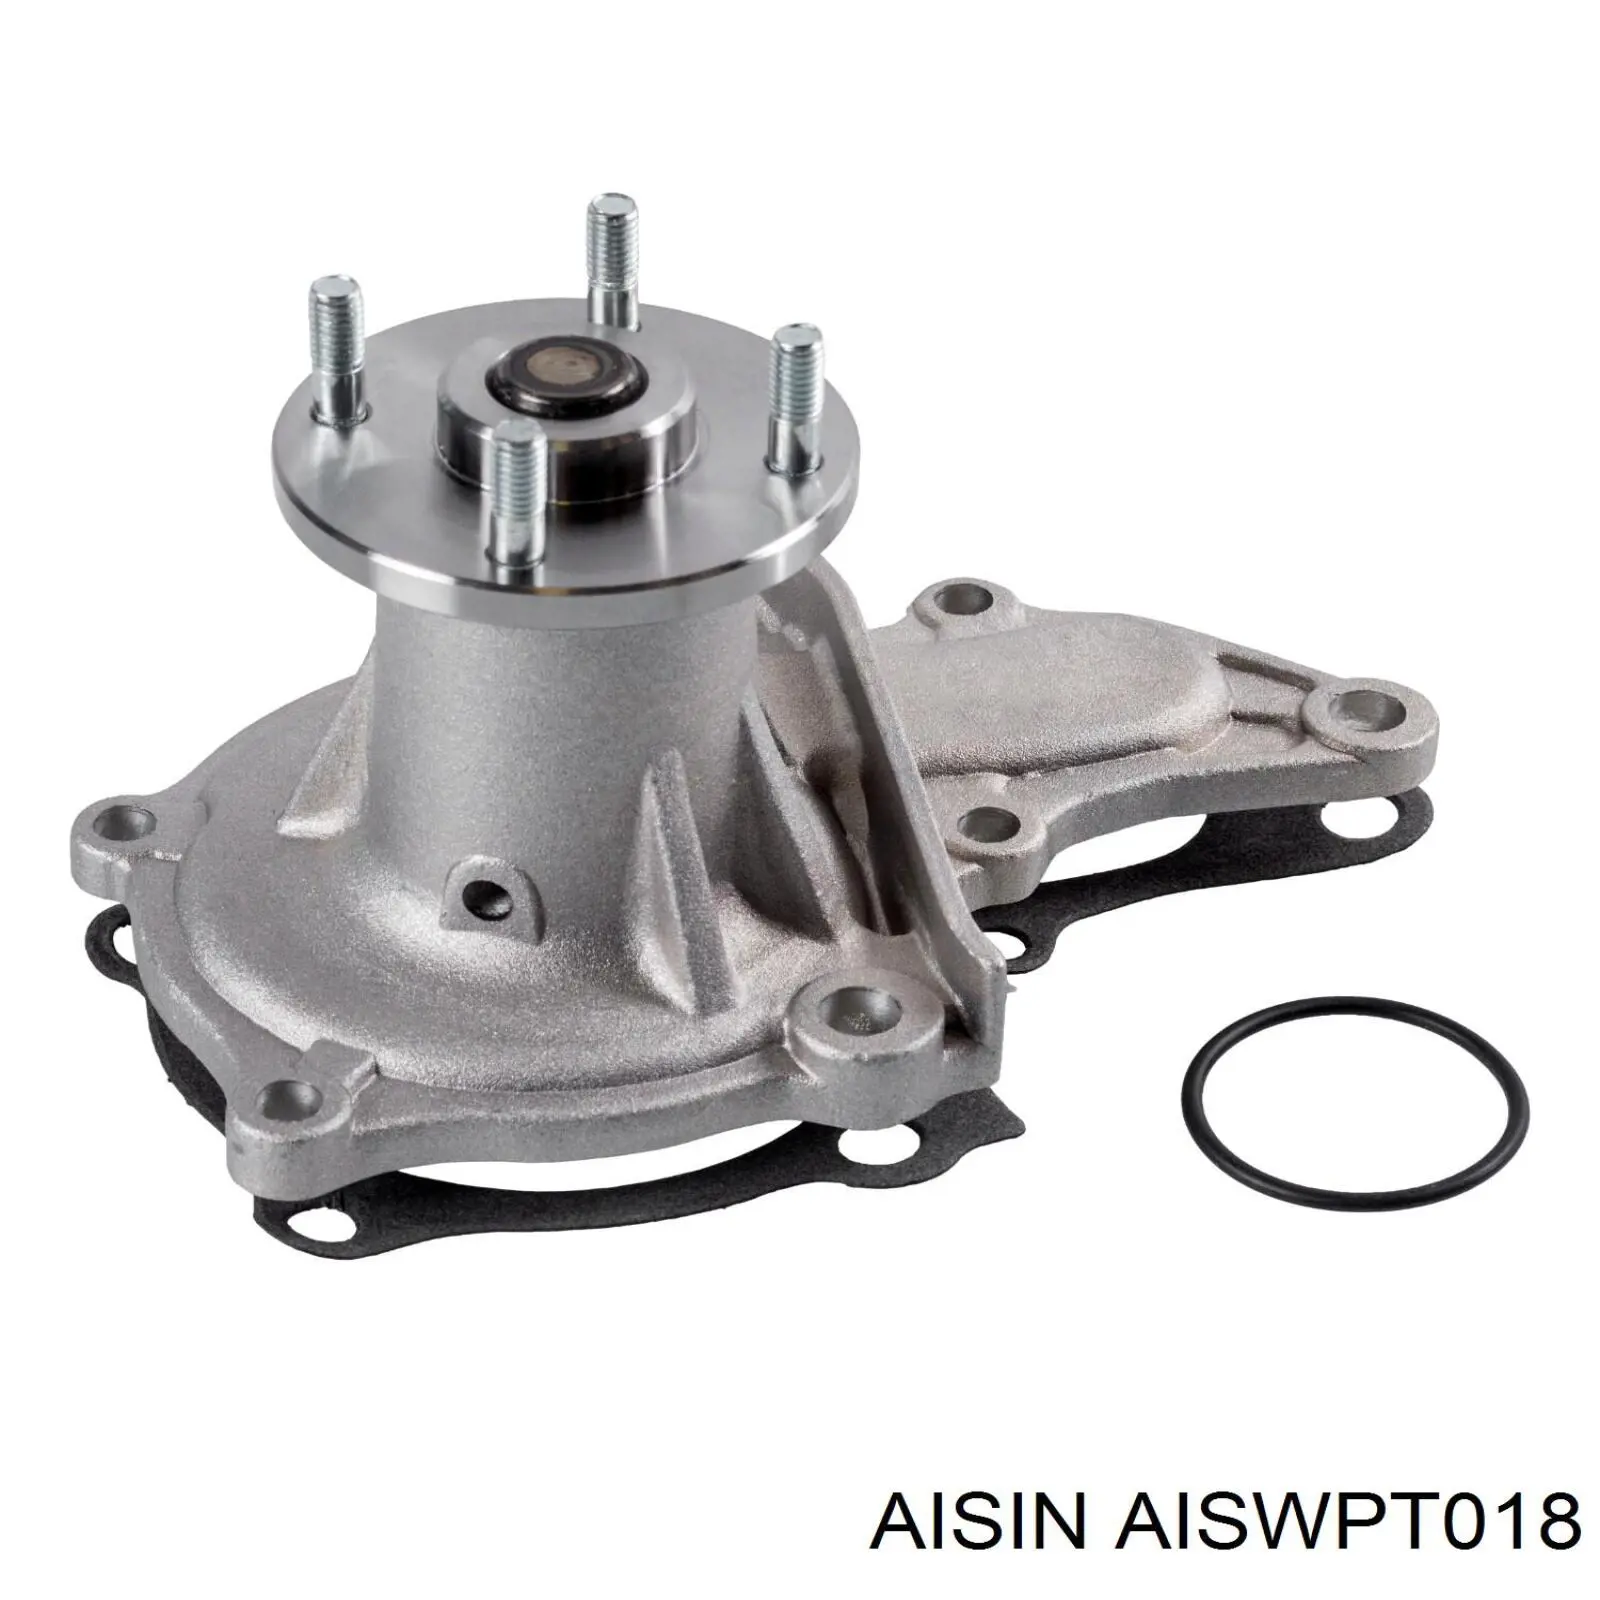 AISWPT-018 Aisin помпа водяная (насос охлаждения, в сборе с корпусом)